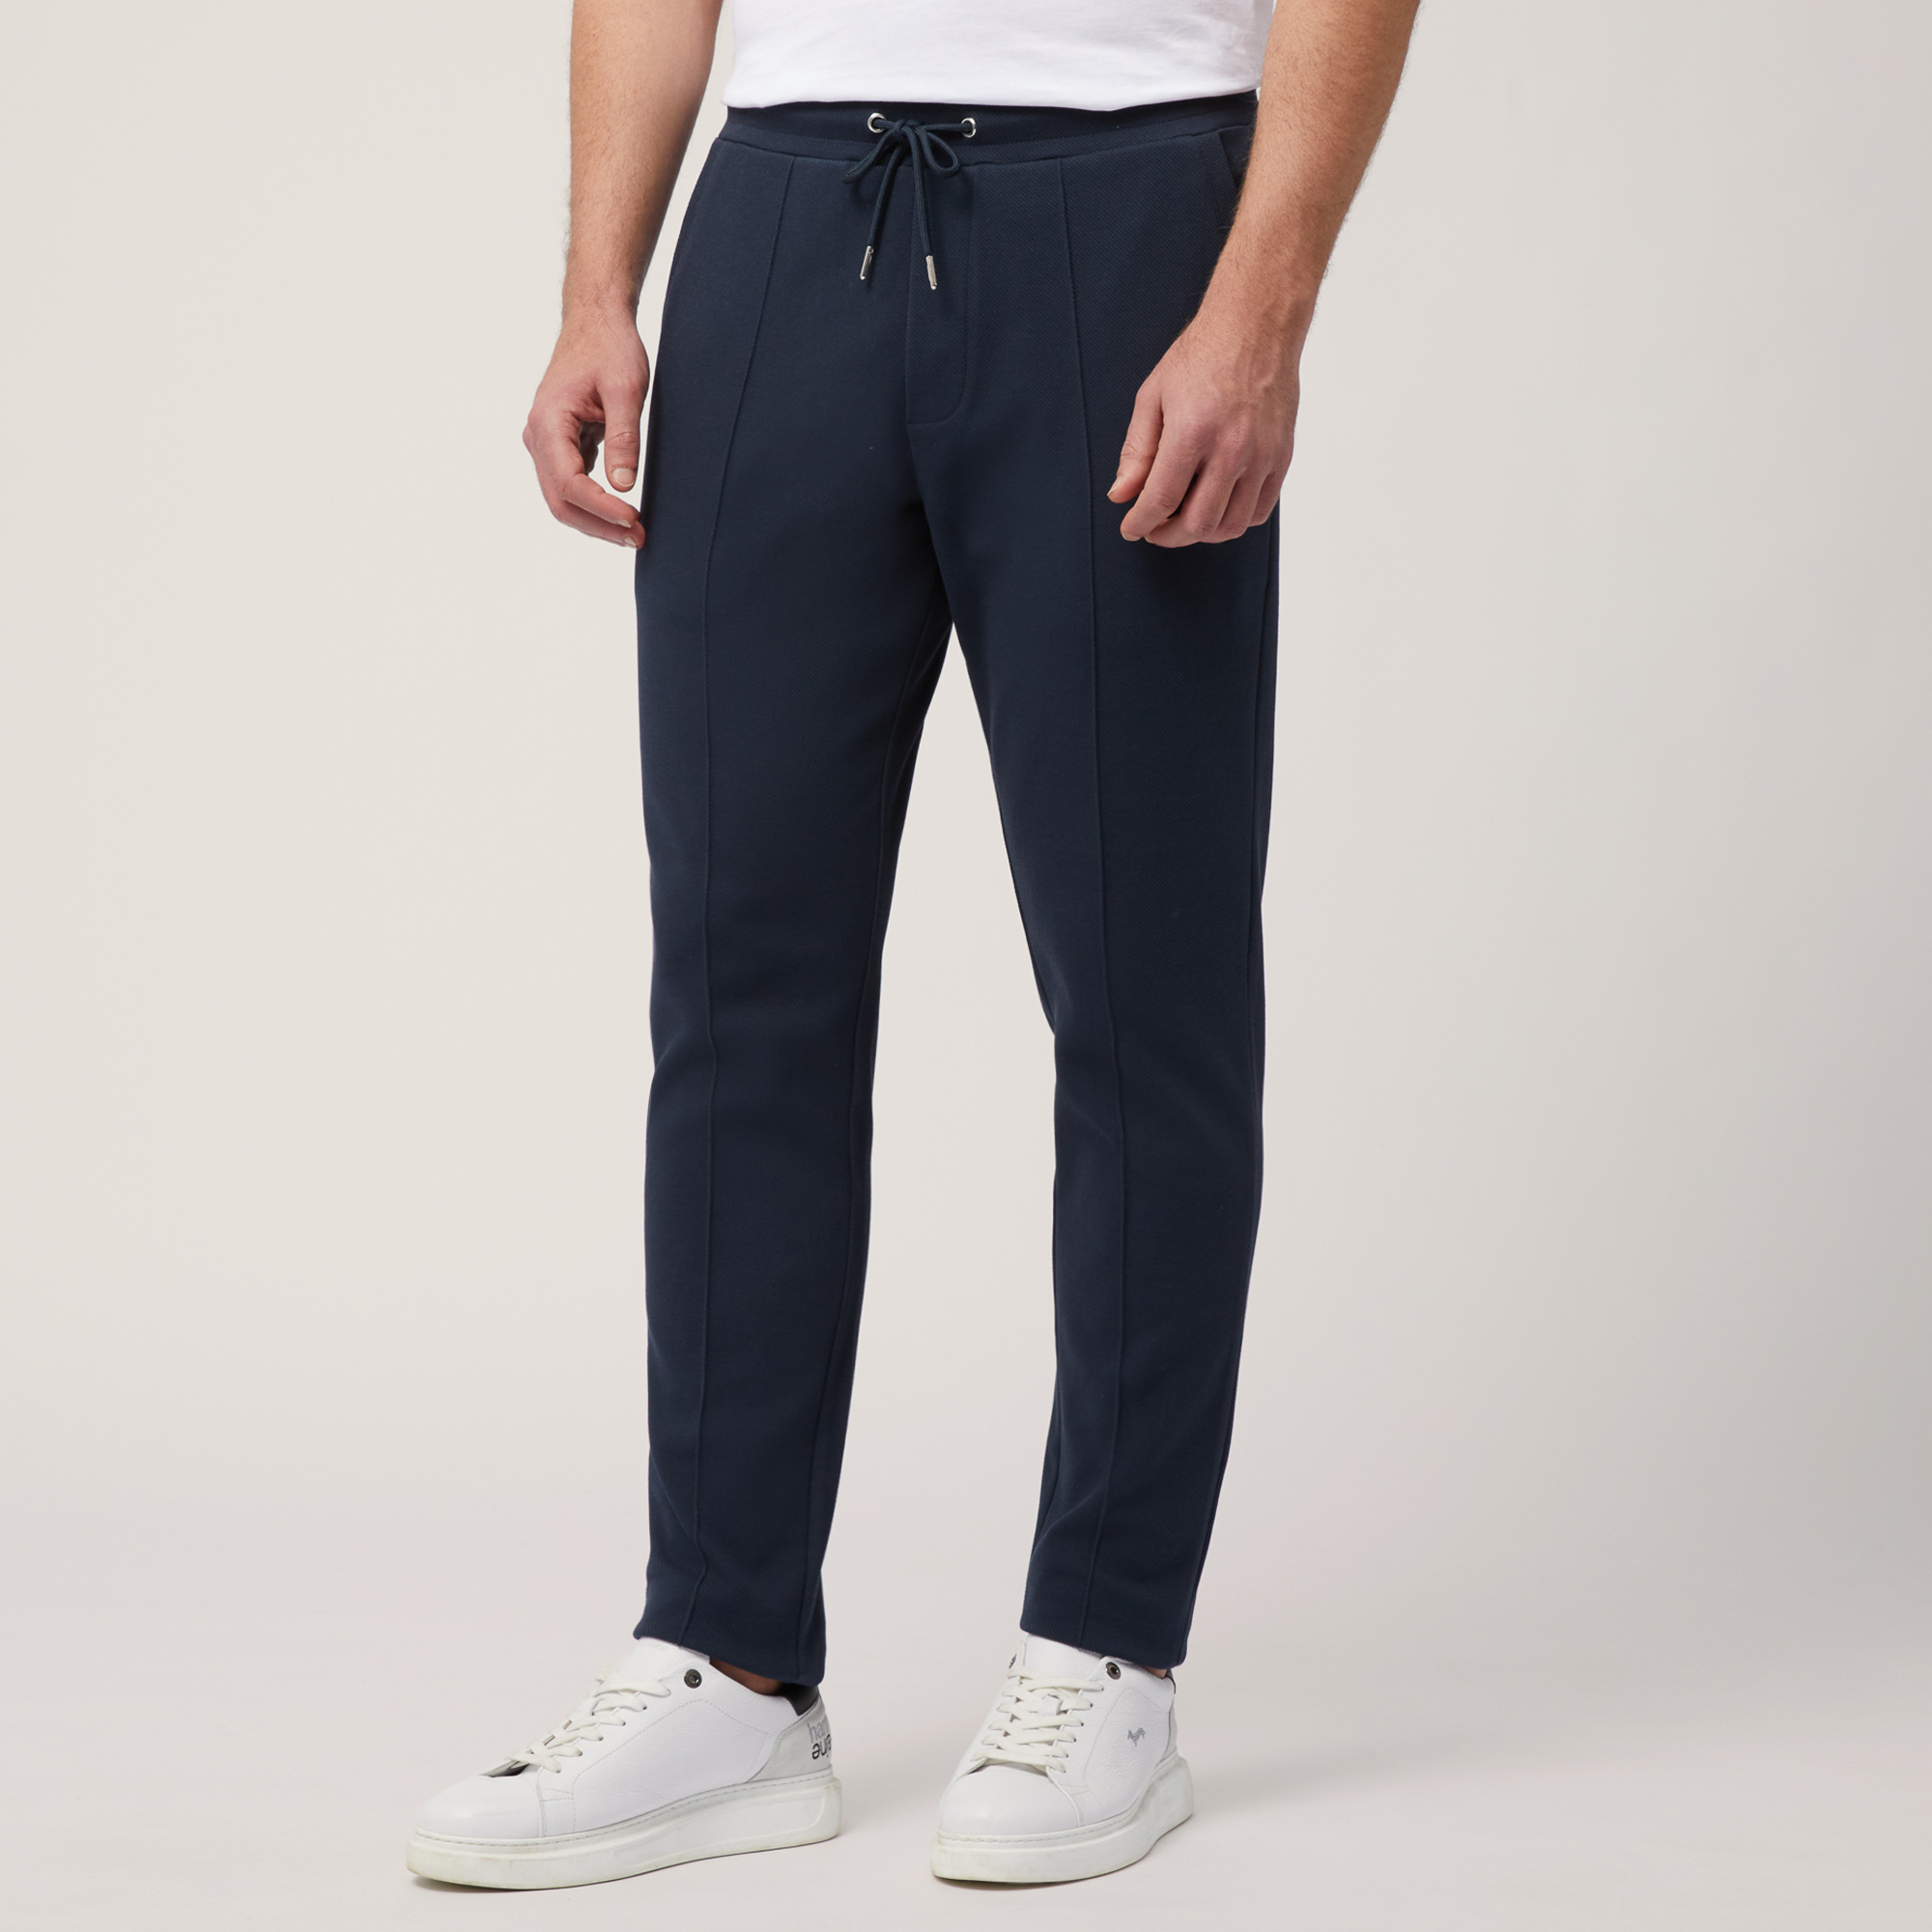 Pantalón de algodón elástico con bolsillo trasero, Azul, large